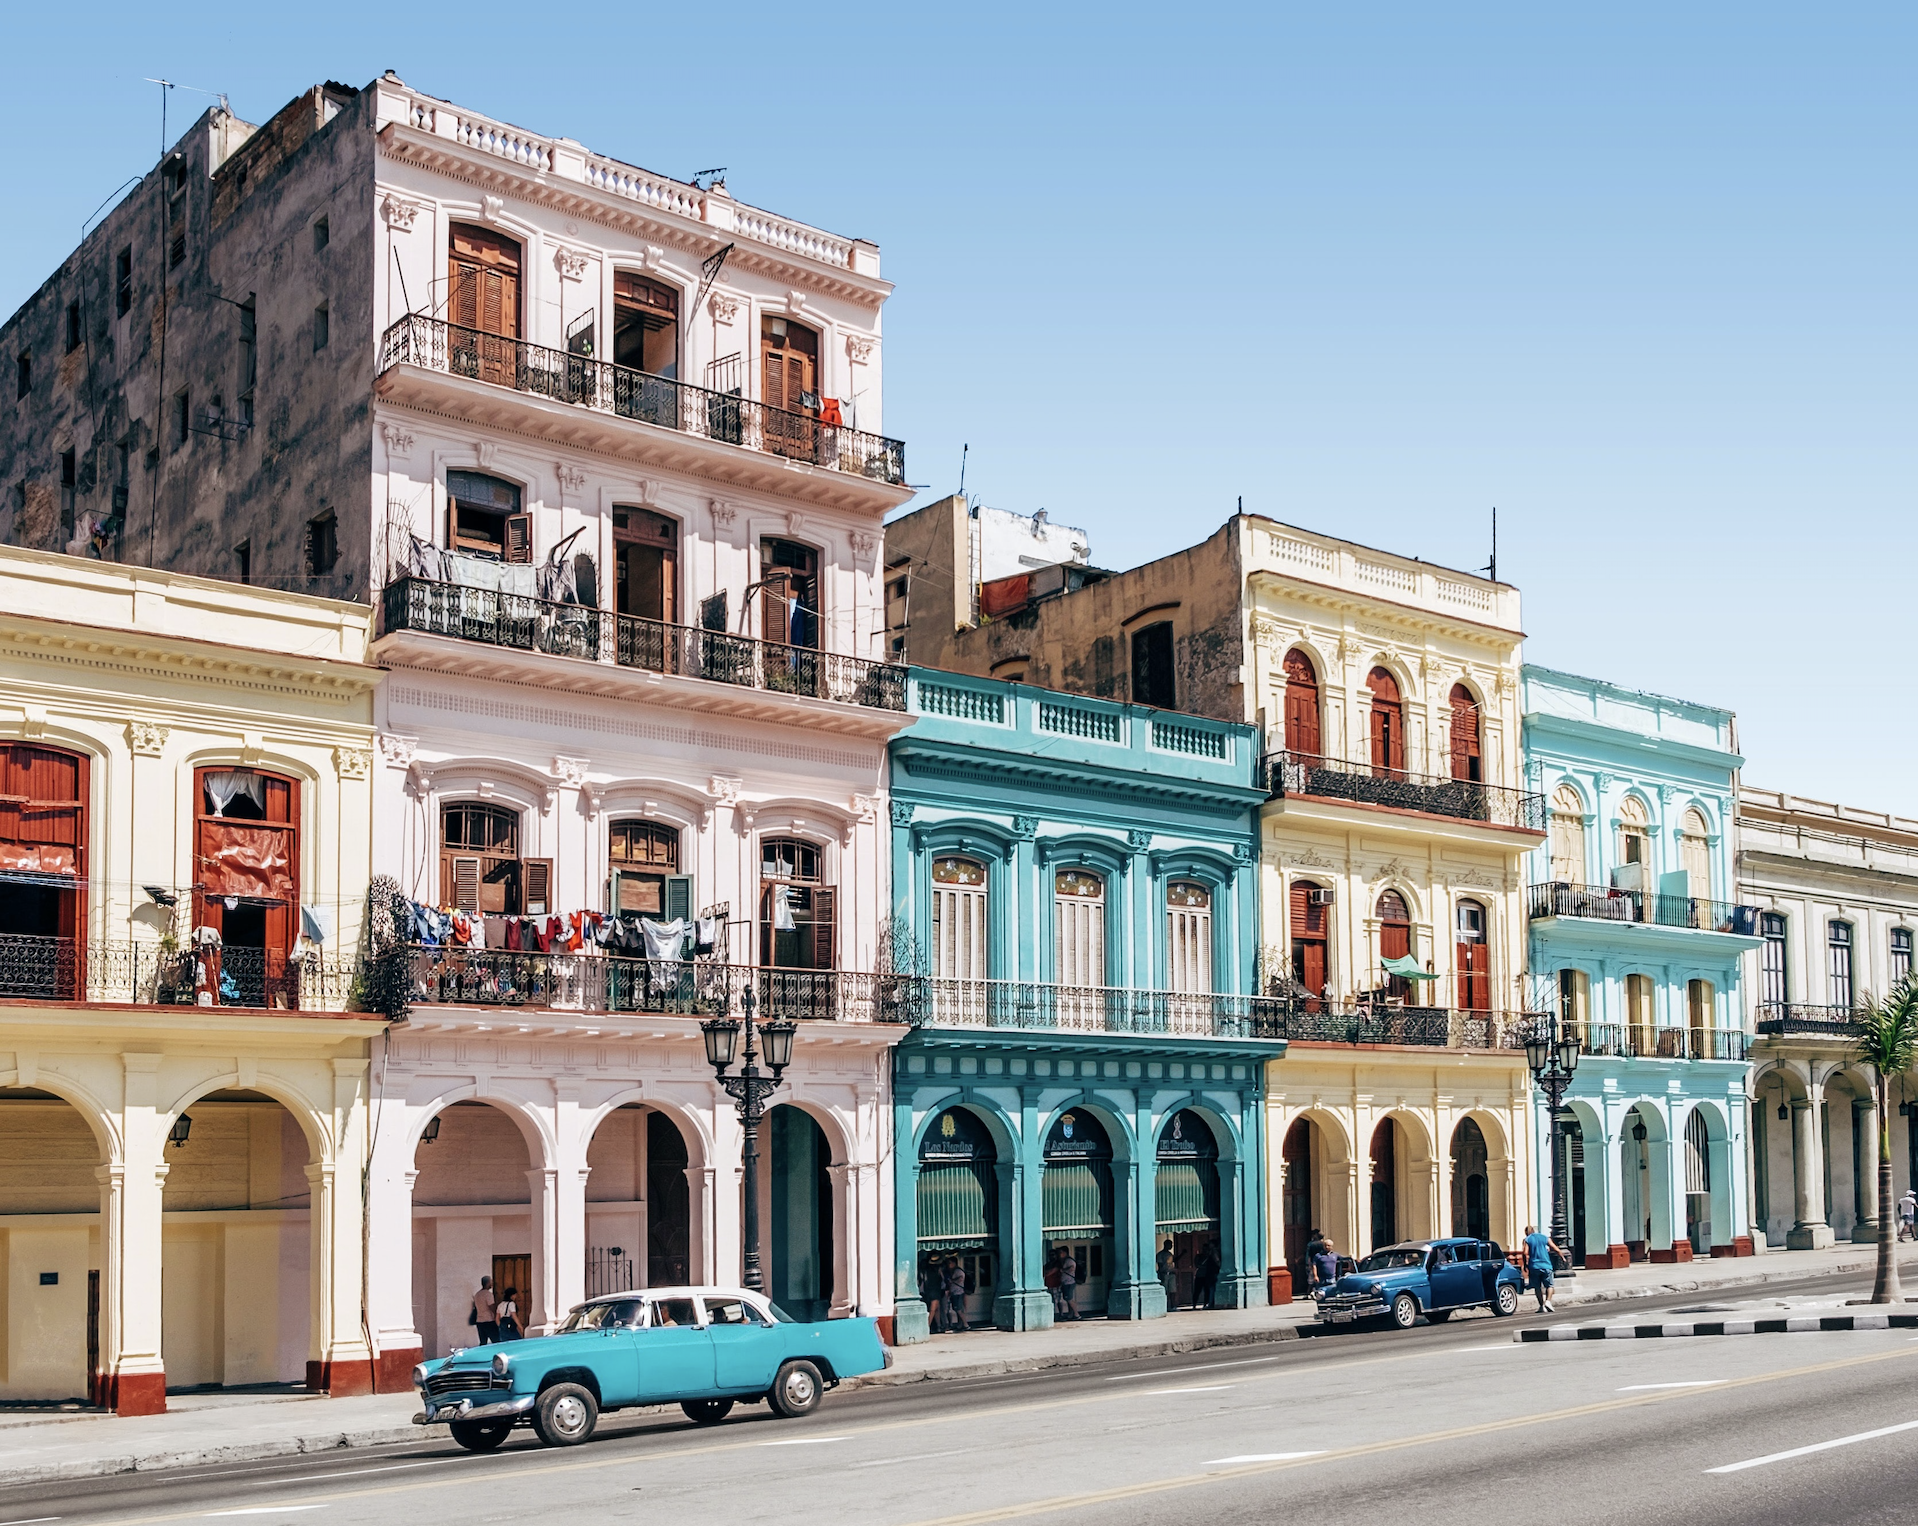 Itinerario en Cuba: escapada al archipiélago de los Canarreos